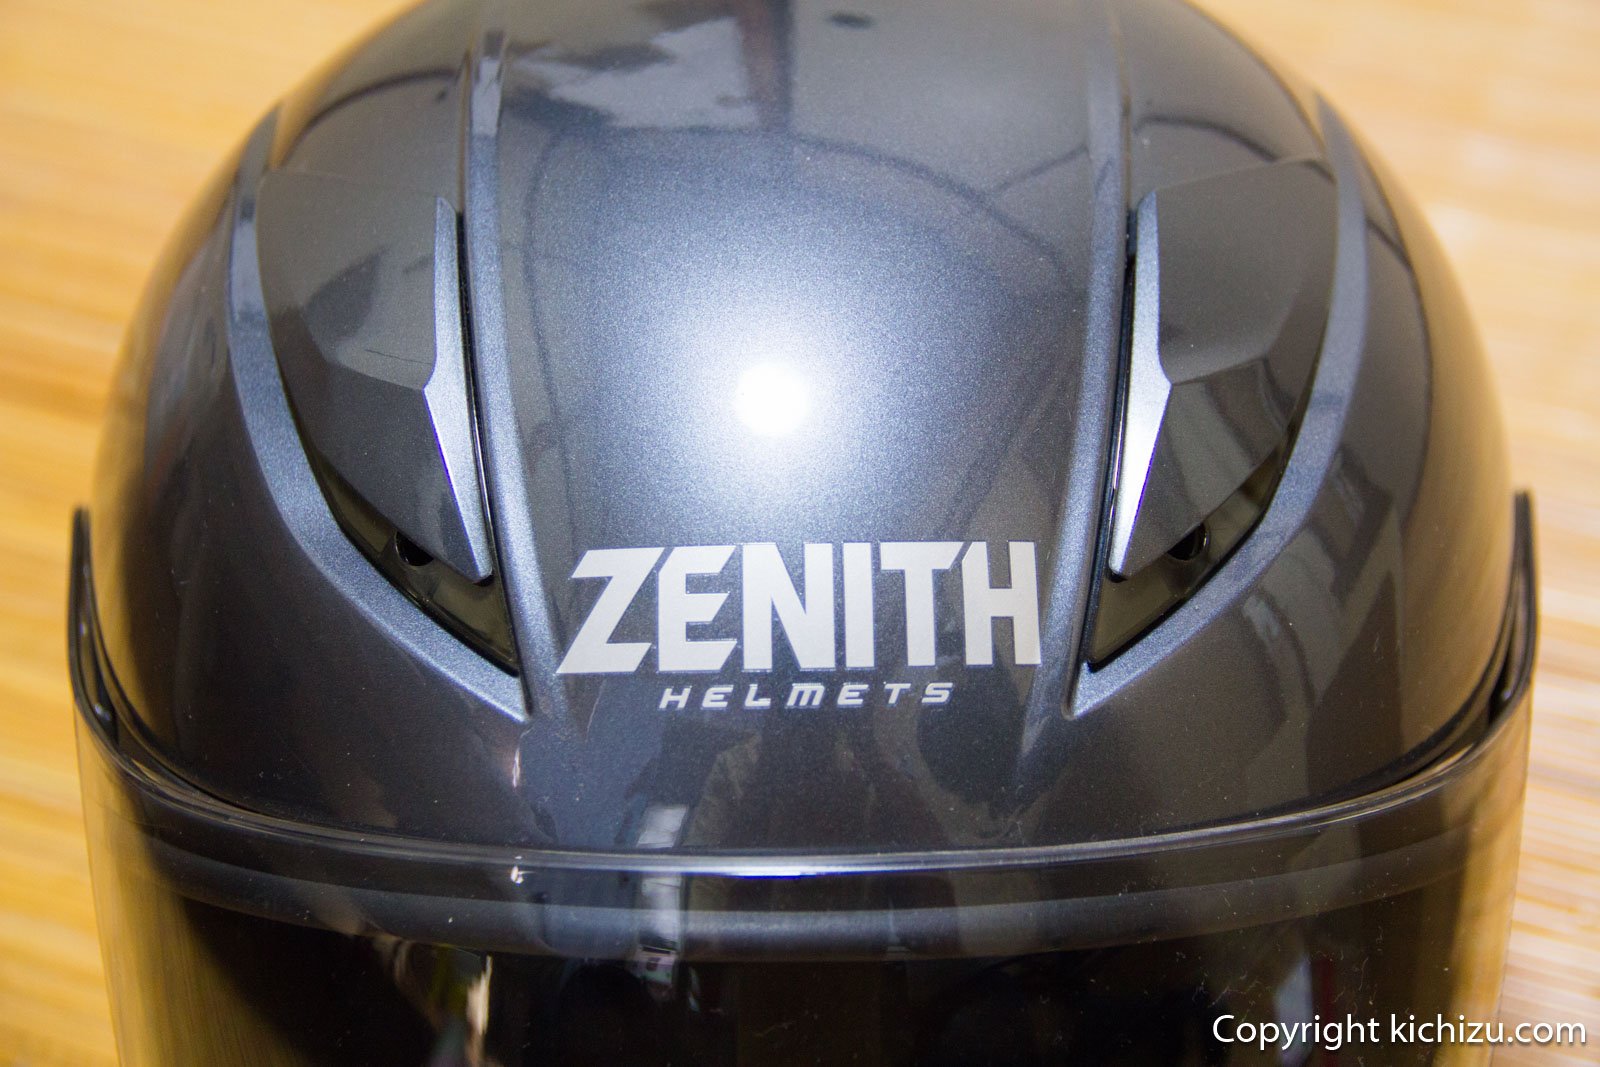 ヤマハ YJ-20 ZENITH ヘルメット購入レビュー | Kichzu's